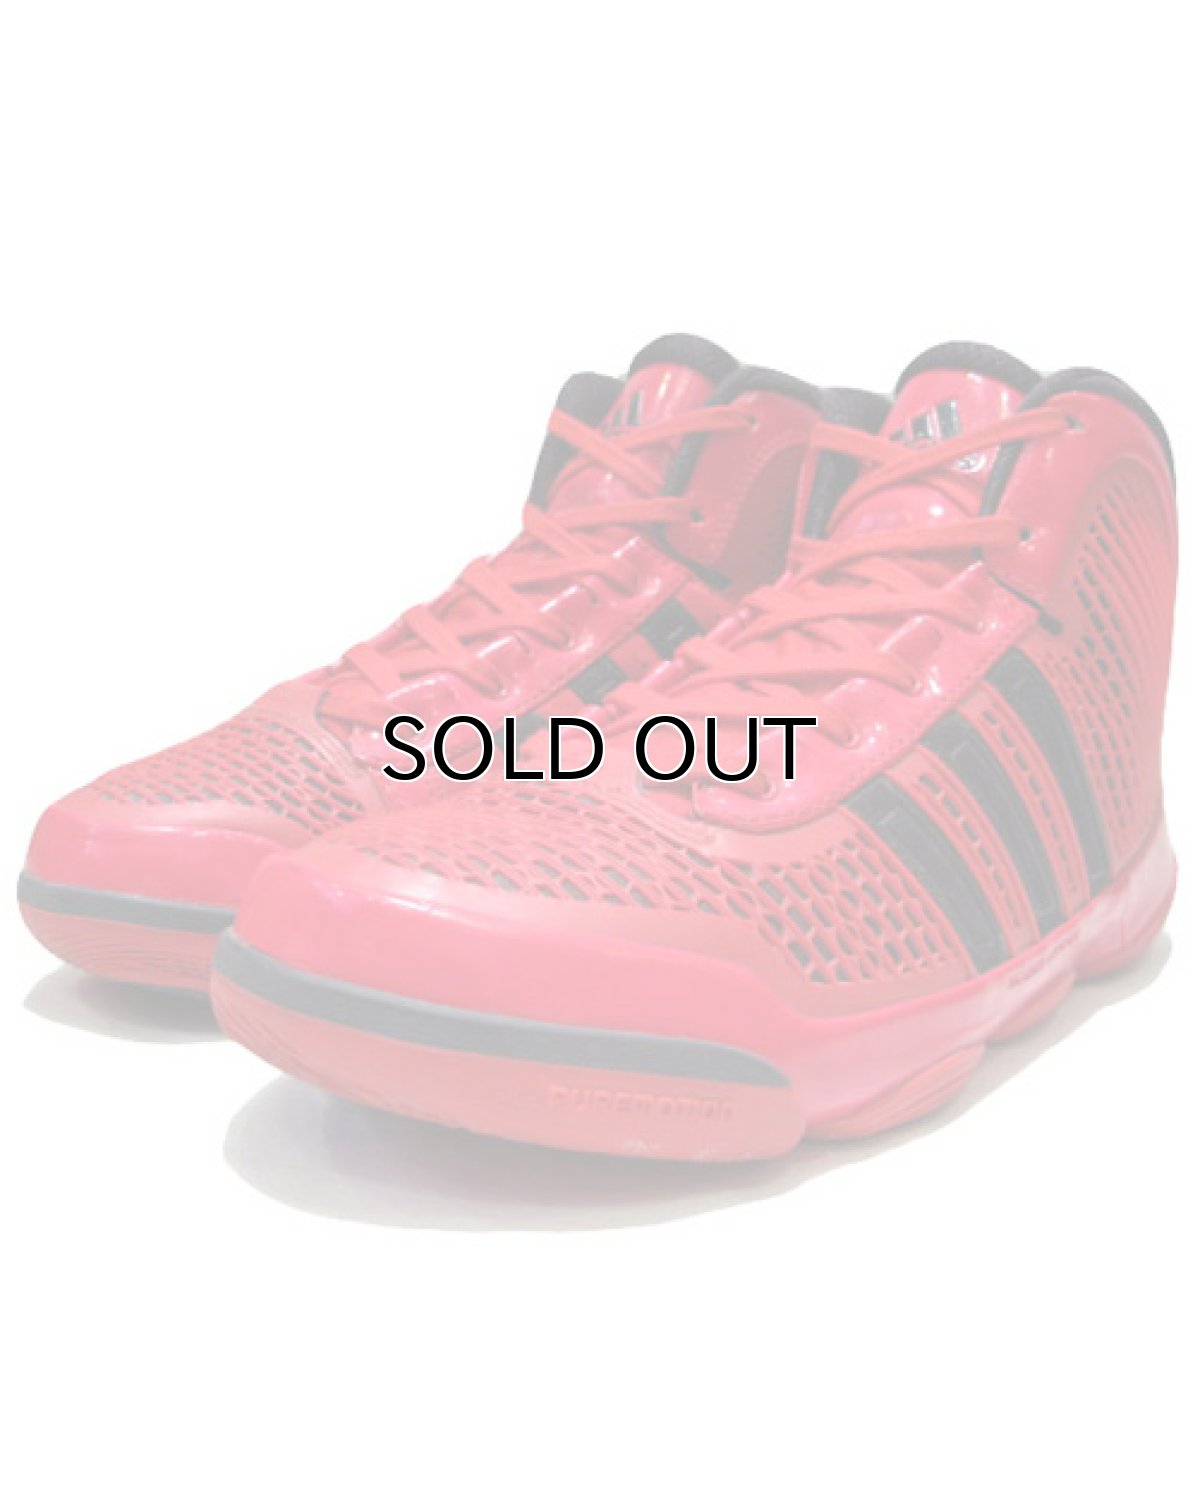 画像1: adidas "adipure" Basketball Shoes　RED / BLACK　size 10 (1)